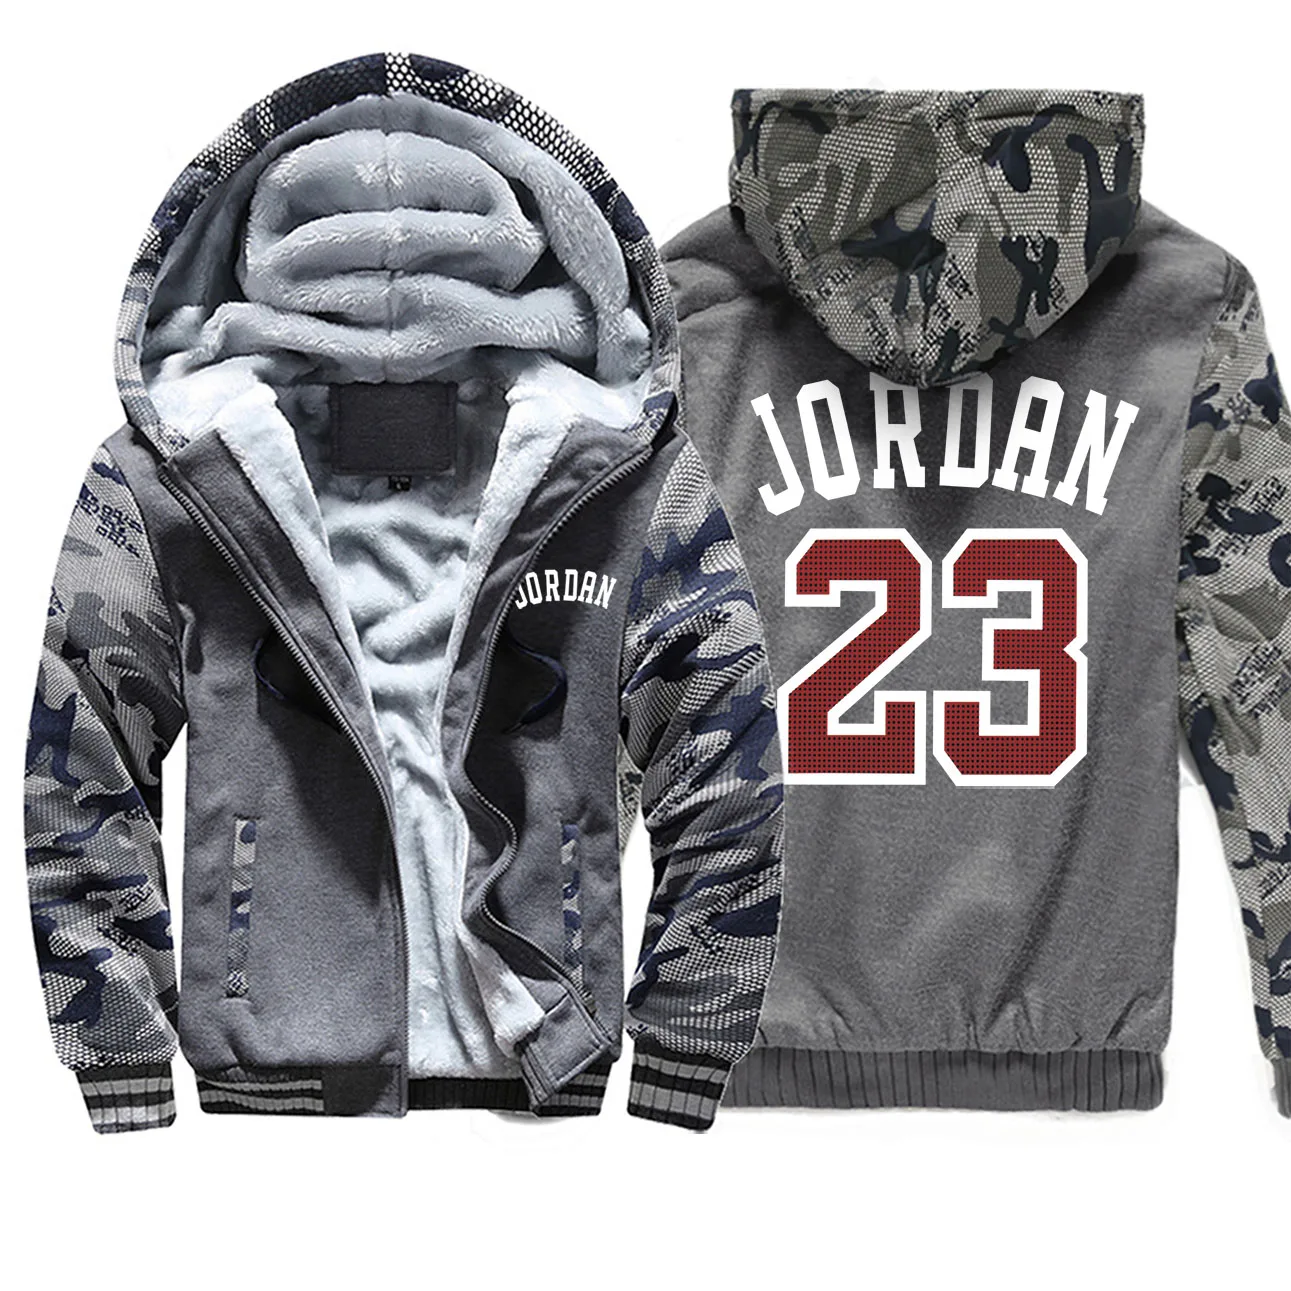 Jordan 23 Зимние толстовки с принтом, реглан, Мужская камуфляжная спортивная одежда, новинка, уличная одежда в стиле хип-хоп, модное пальто, плотные толстовки - Цвет: Dark Gray 6